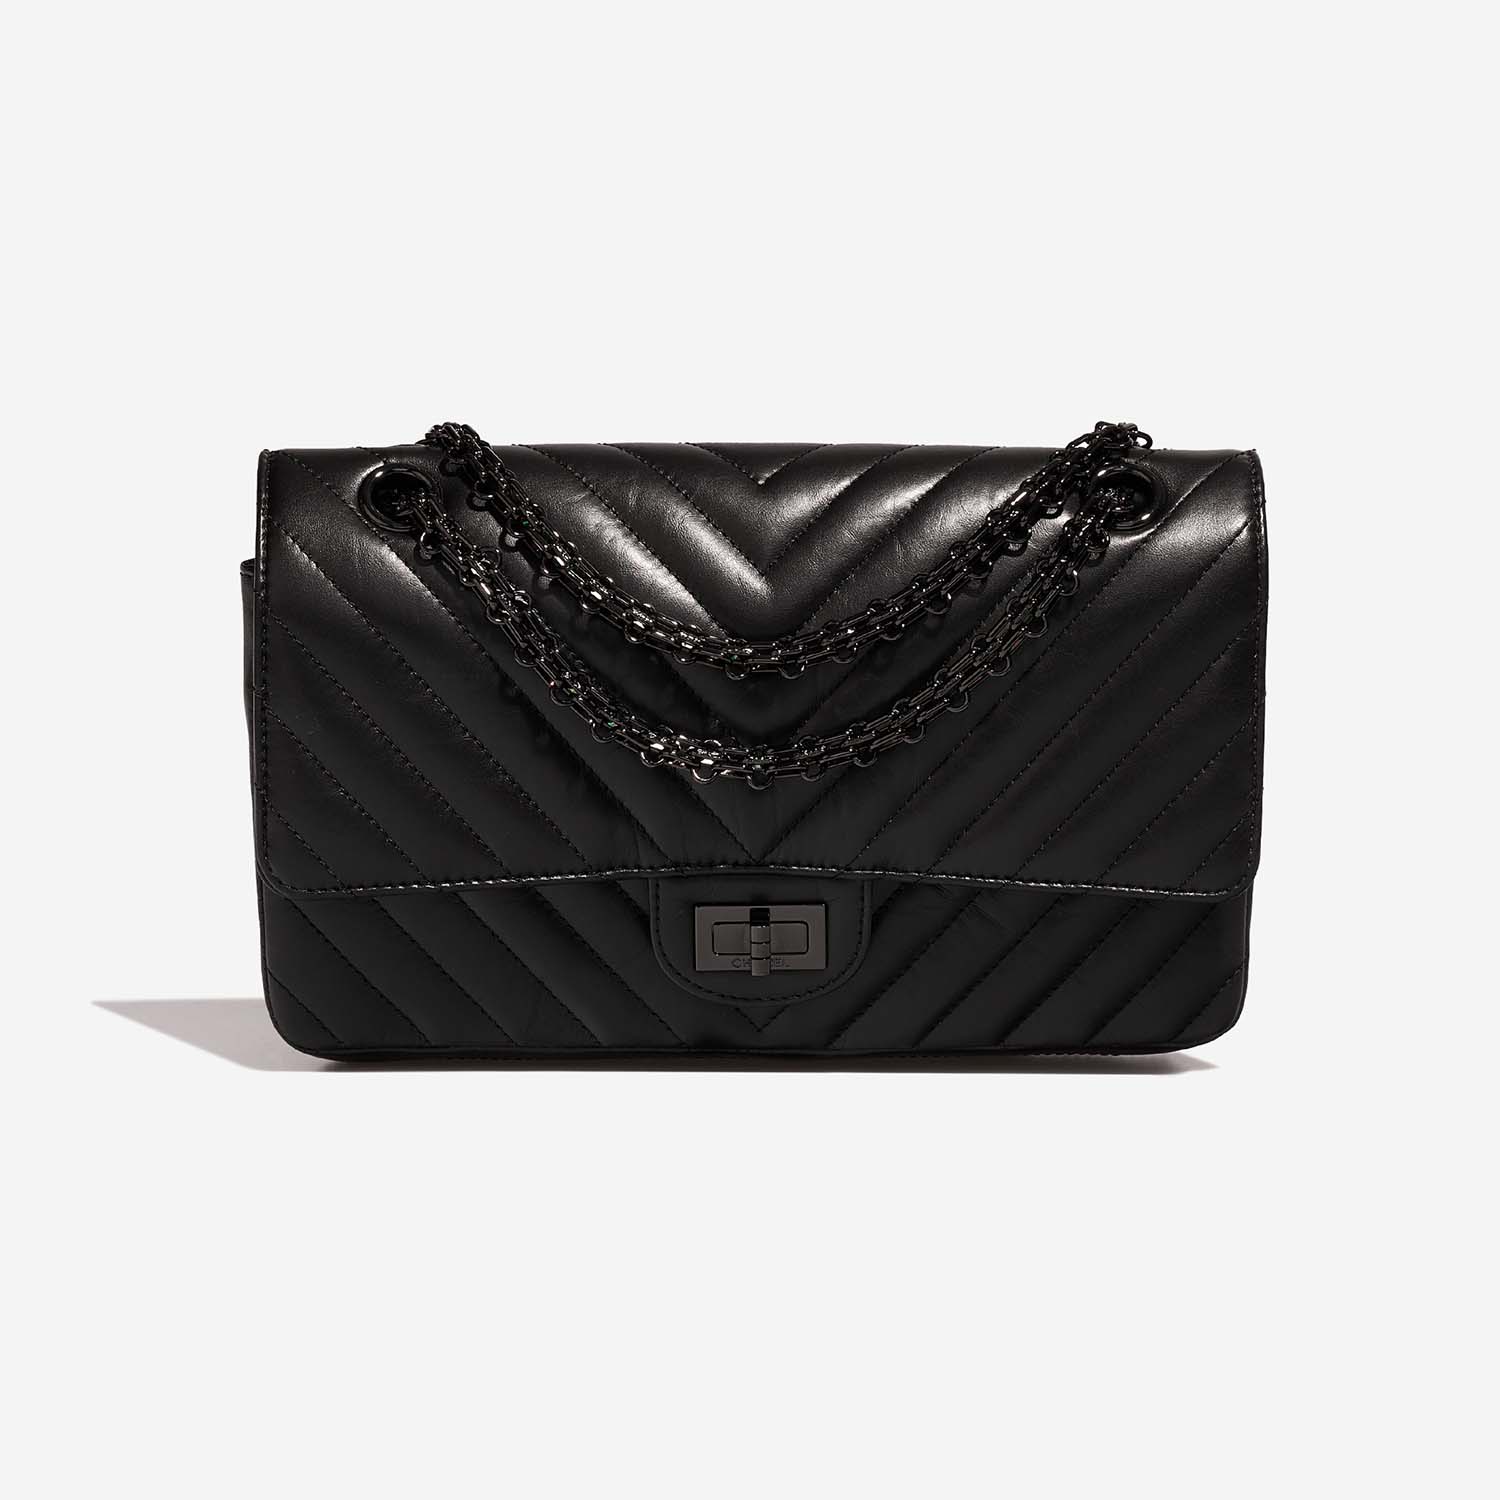 Chanel 255Reissue 225 Black Front | Verkaufen Sie Ihre Designer-Tasche auf Saclab.com